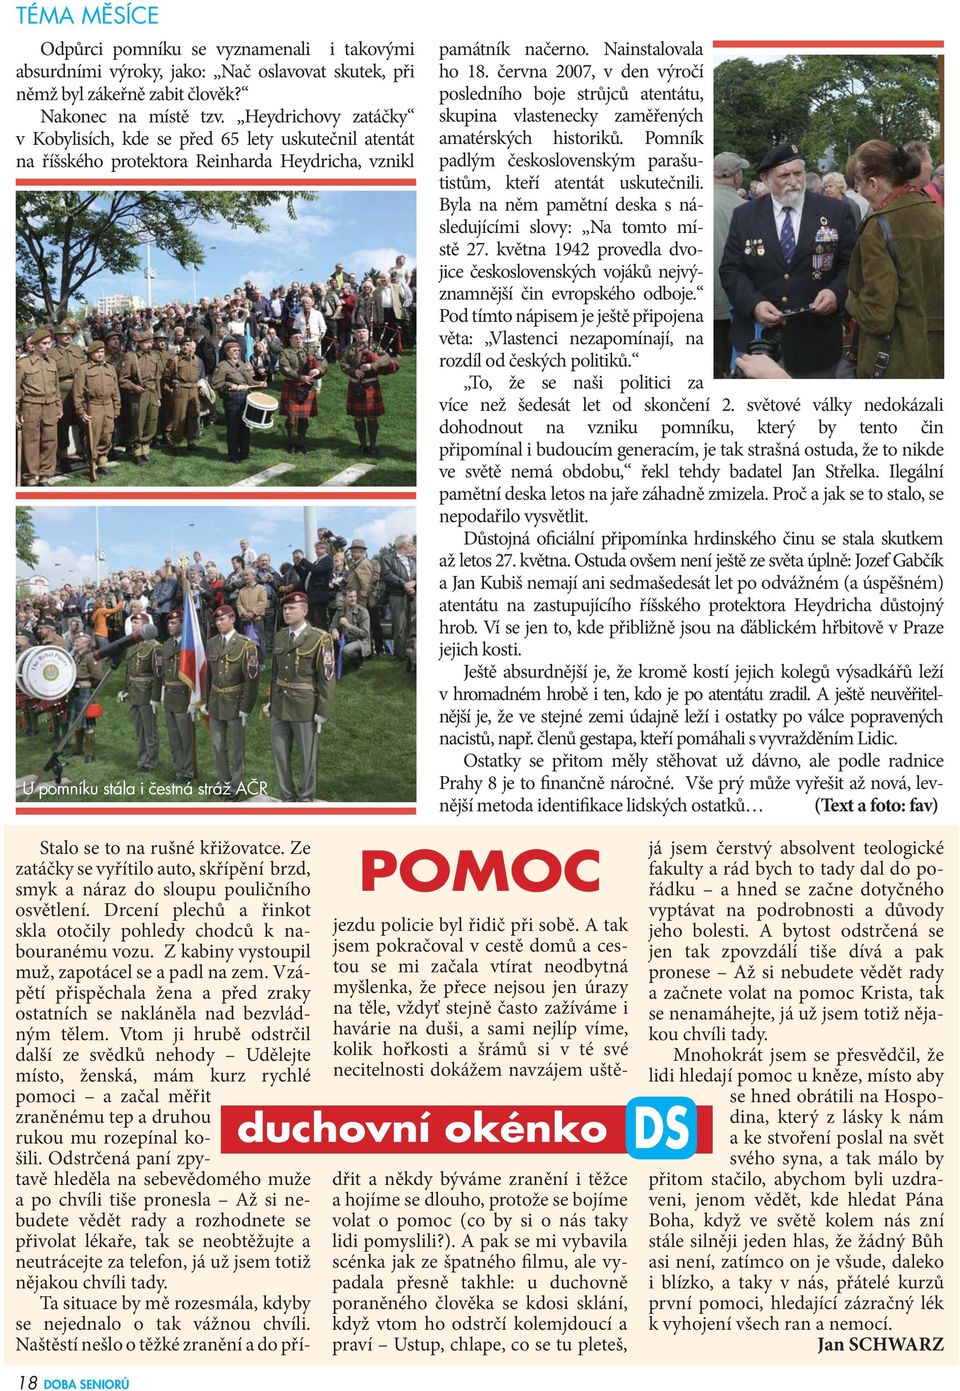 června 2007, v den výročí posledního boje strůjců atentátu, skupina vlastenecky zaměřených amatérských historiků. Pomník padlým československým parašutistům, kteří atentát uskutečnili.